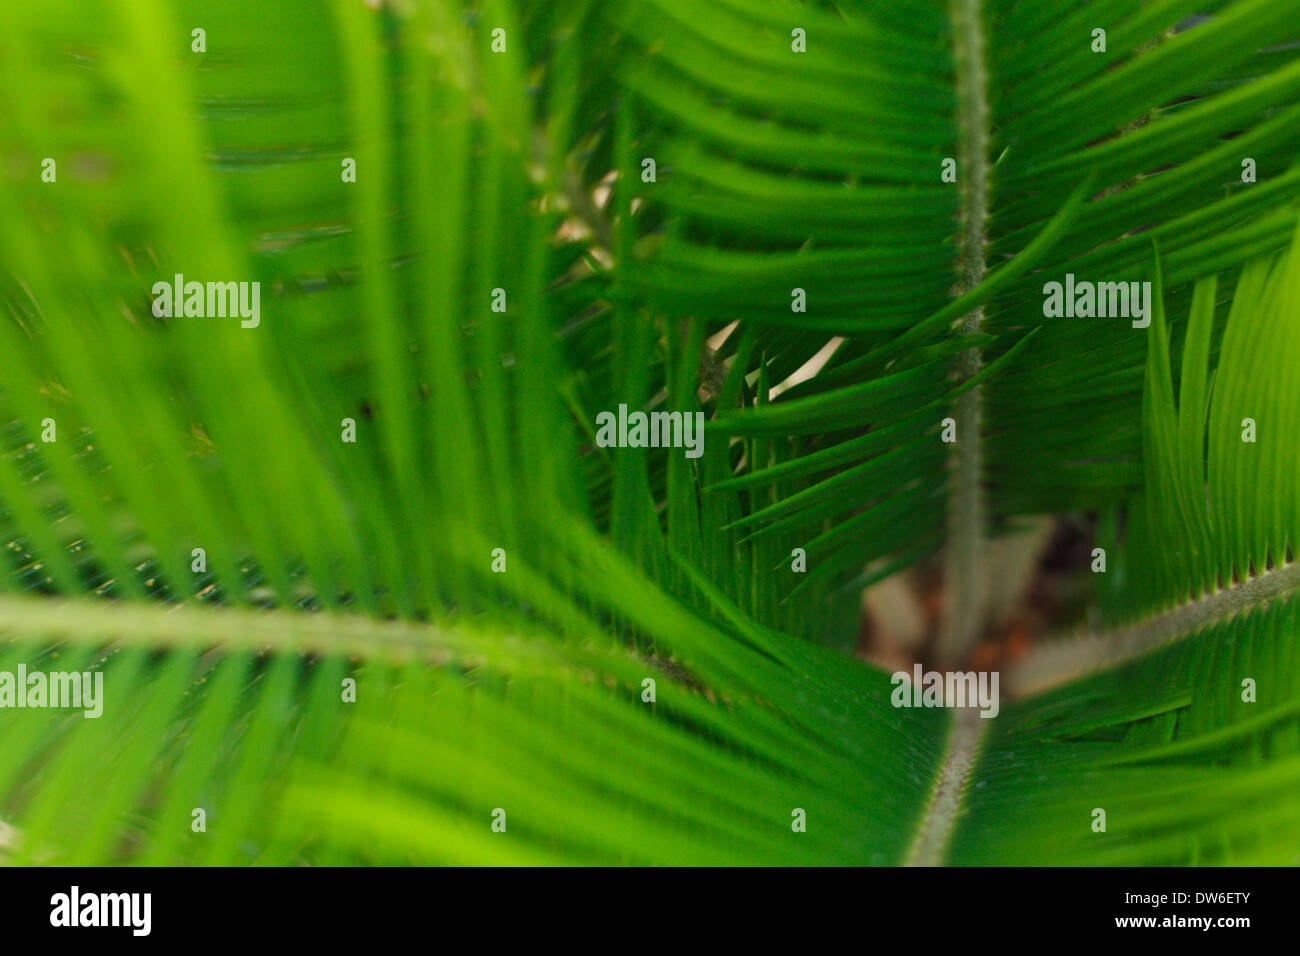 A closeup of a palm tree. Stock Photo